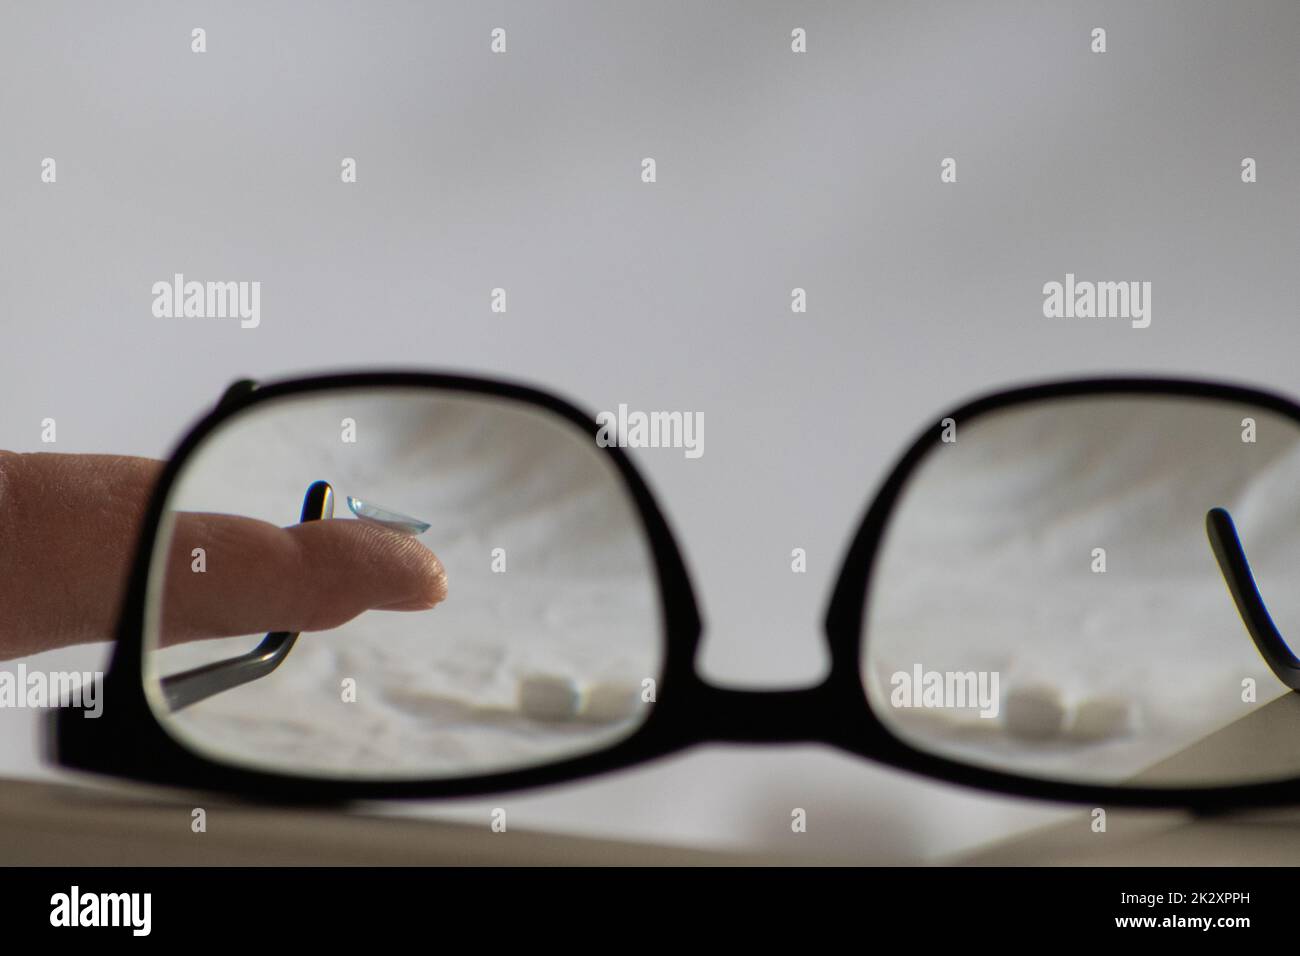 La lentille de contact bleue à travers les lunettes noires montre différentes lunettes pour corriger la myopie et la myopie par optométrie ou un ophtalmologiste contre la myopie avec correction visuelle des yeux pour une vision parfaite Banque D'Images